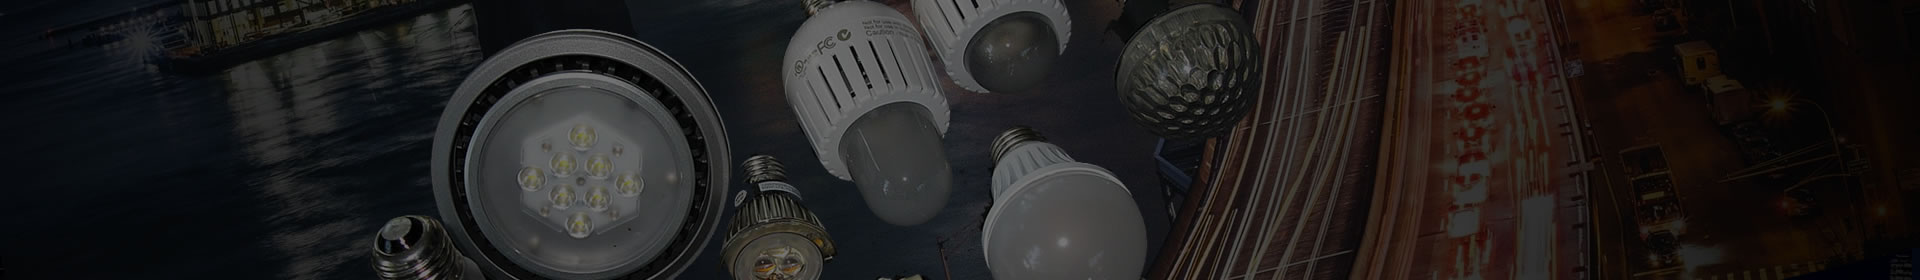 Omnidirectional LED lamps